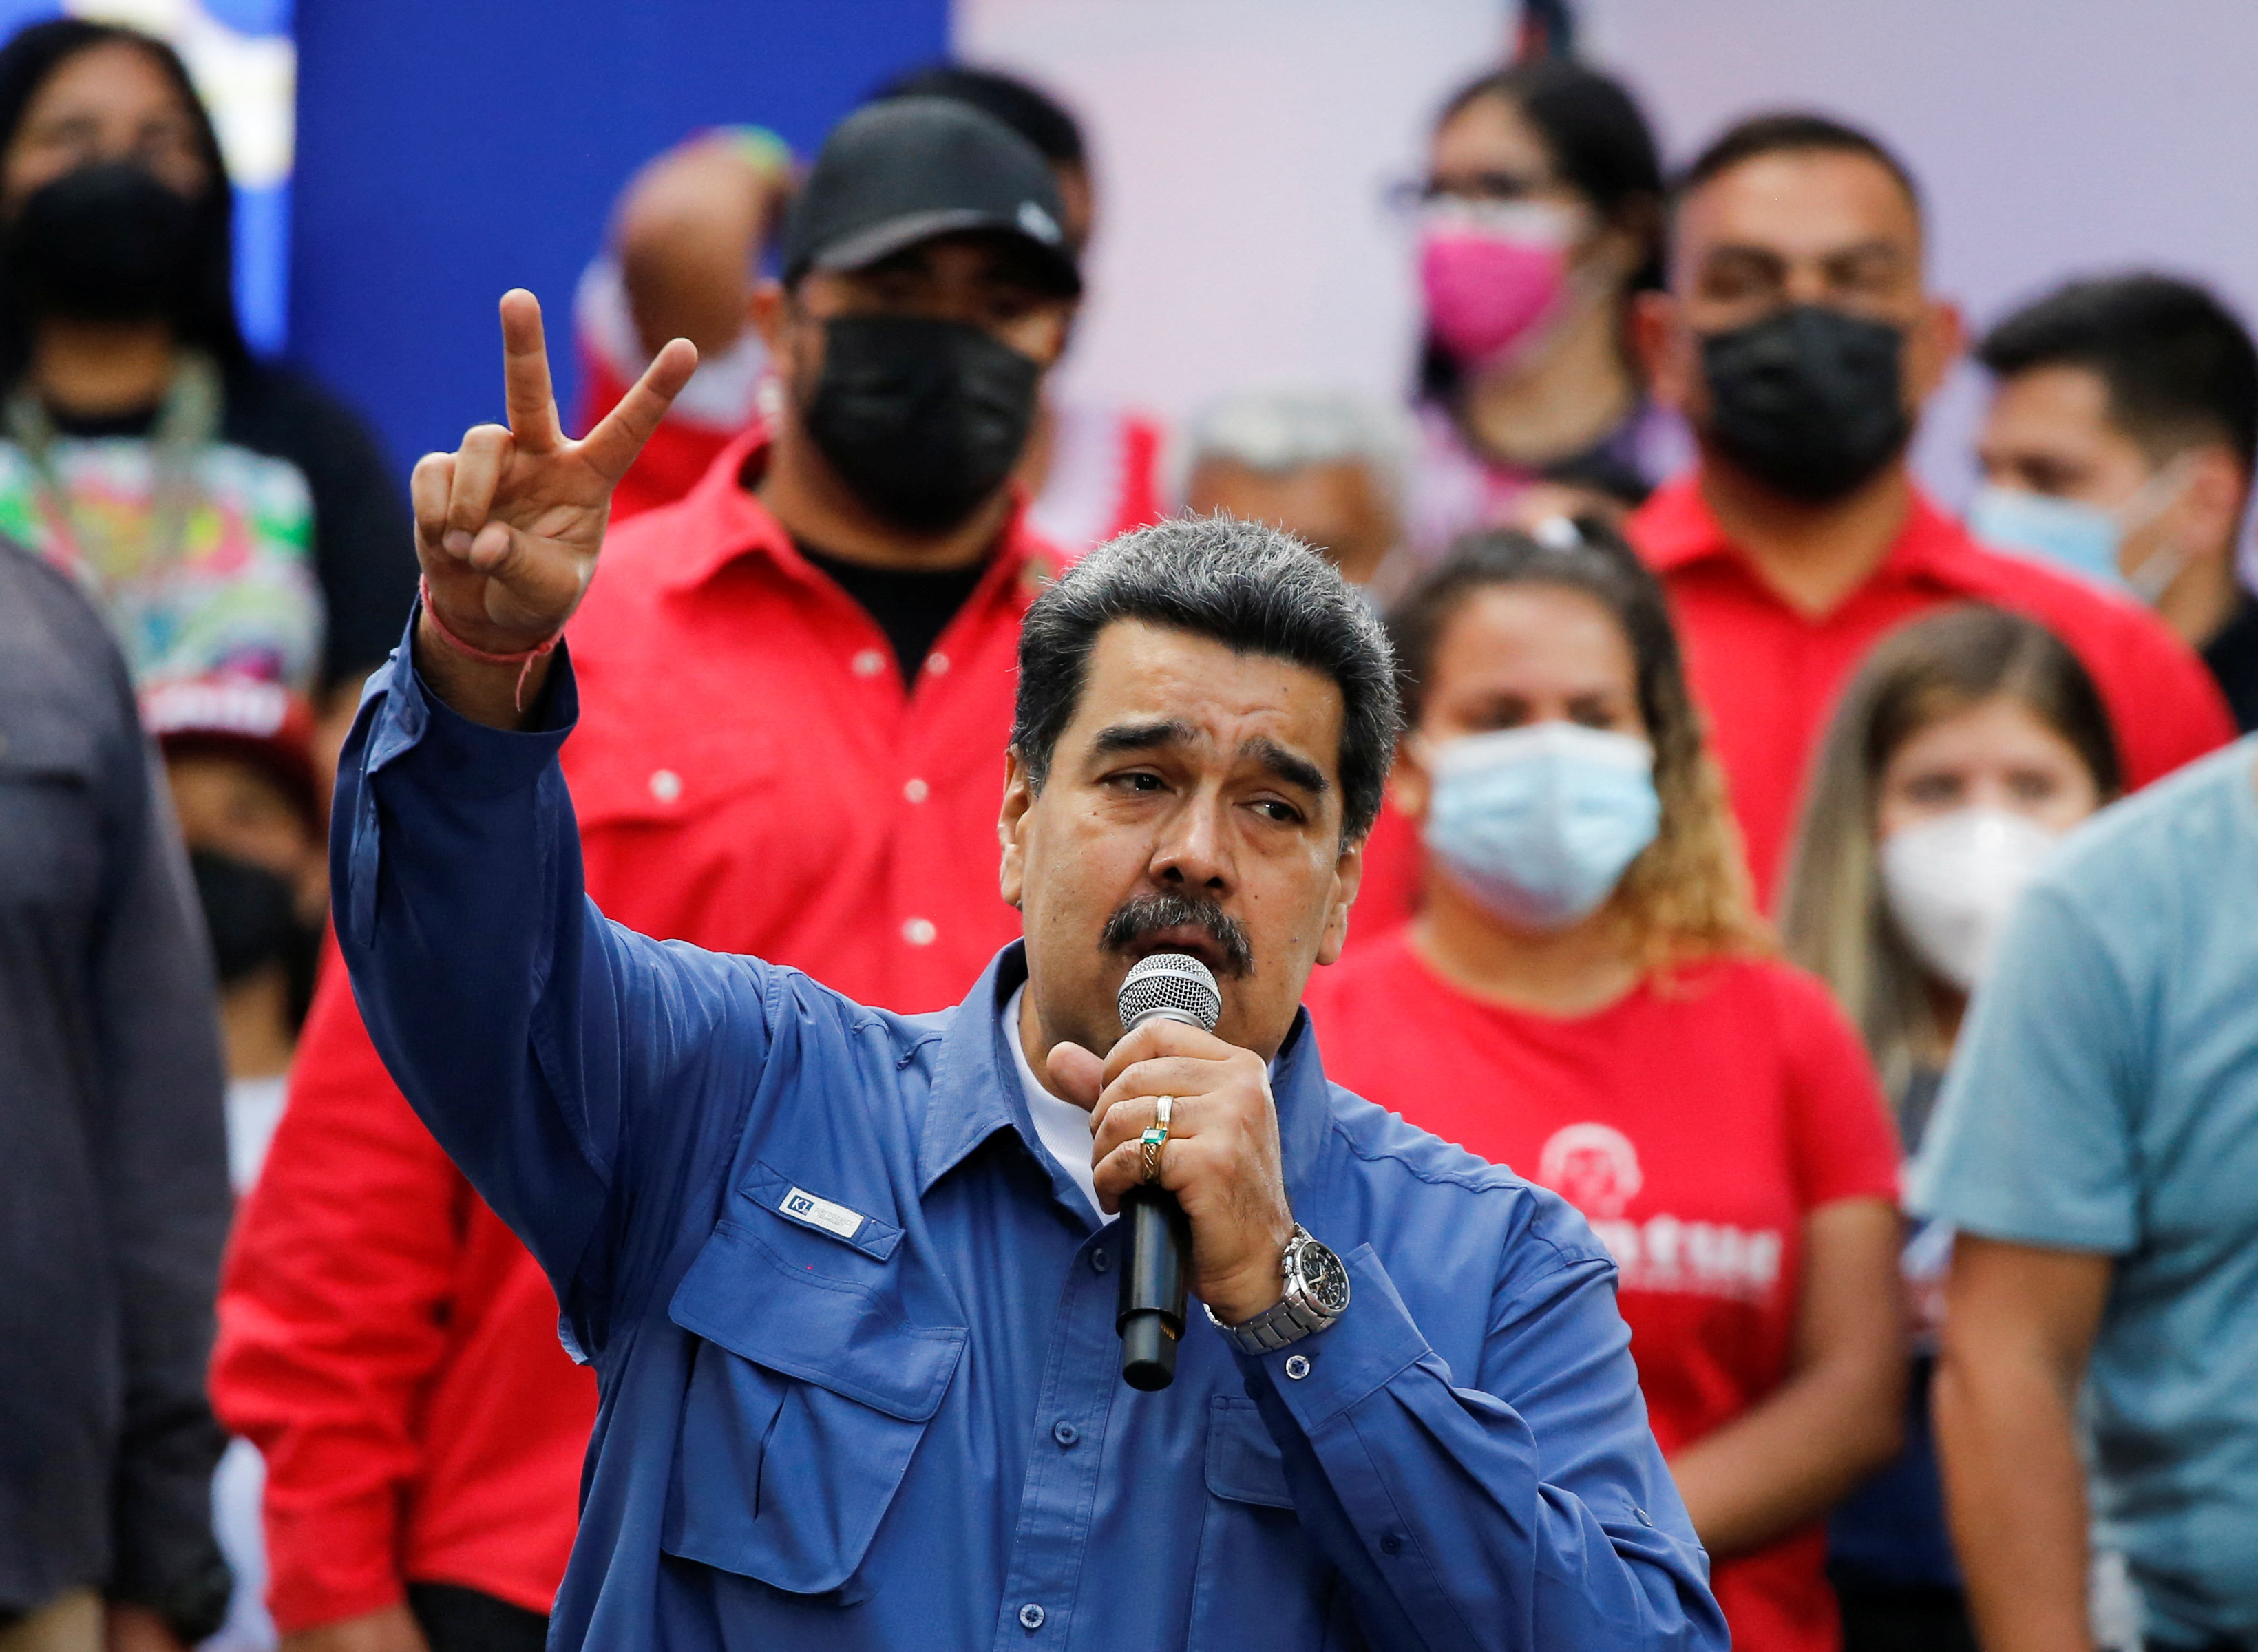 El dictador Nicolás Maduro dijo que solicitará la visa para ir a un festival de salsa en Nueva York: “Amamos los Estados Unidos”